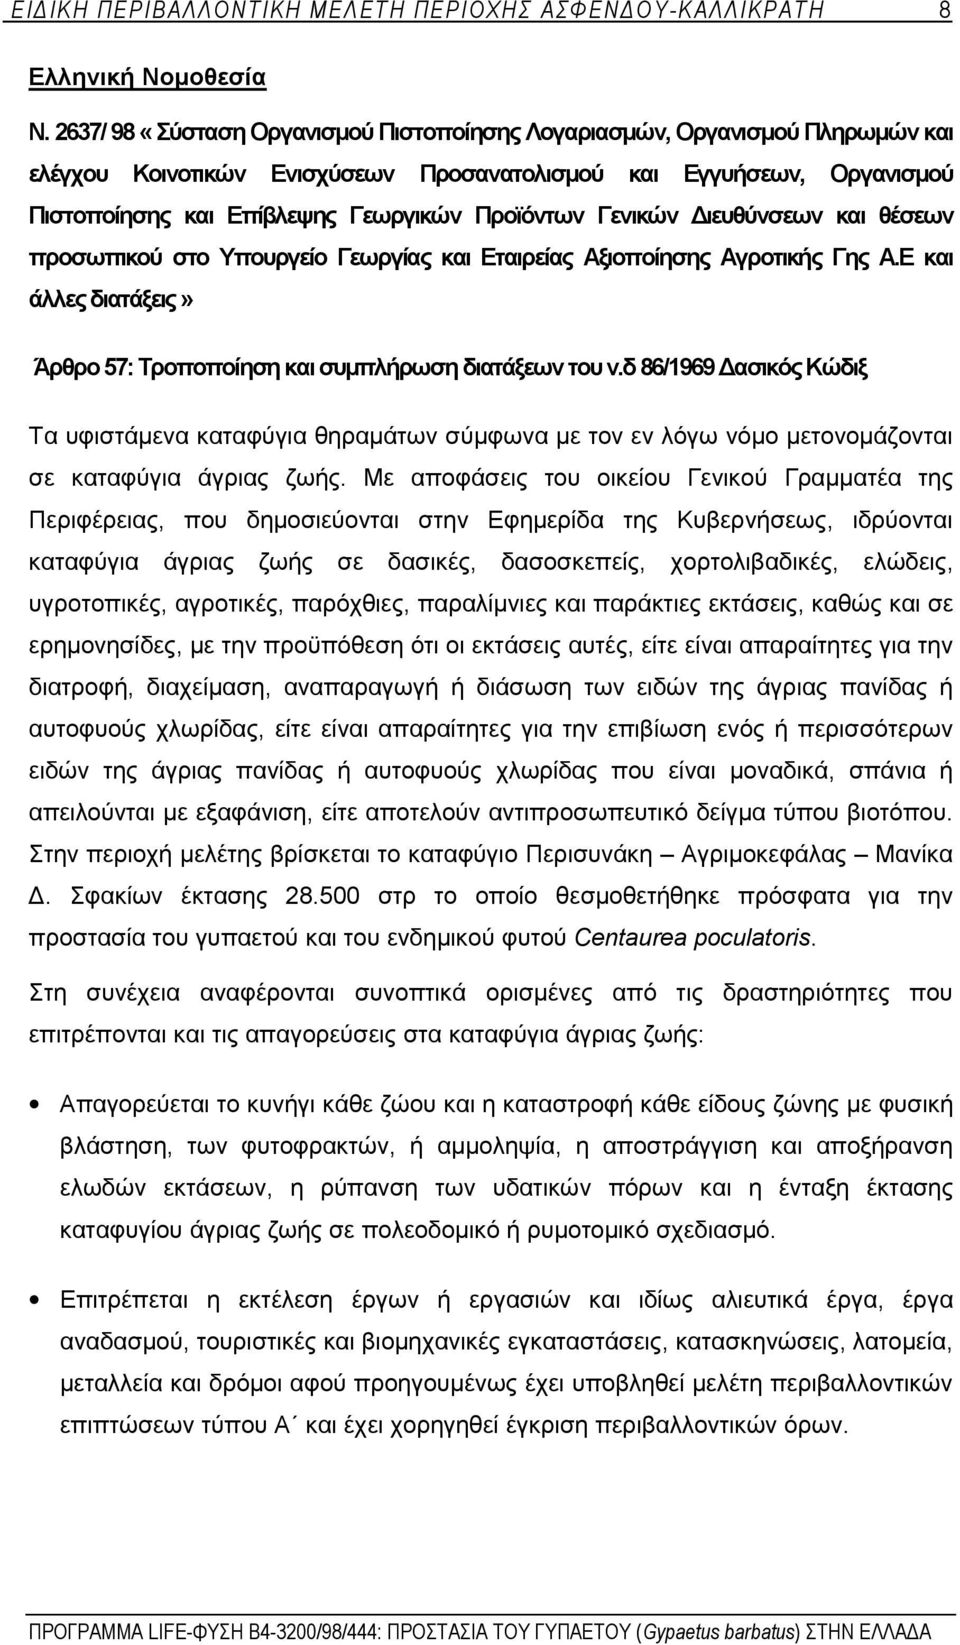 Γενικών Διευθύνσεων και θέσεων προσωπικού στο Υπουργείο Γεωργίας και Εταιρείας Αξιοποίησης Αγροτικής Γης Α.Ε και άλλες διατάξεις» Άρθρο 57: Τροποποίηση και συμπλήρωση διατάξεων του ν.